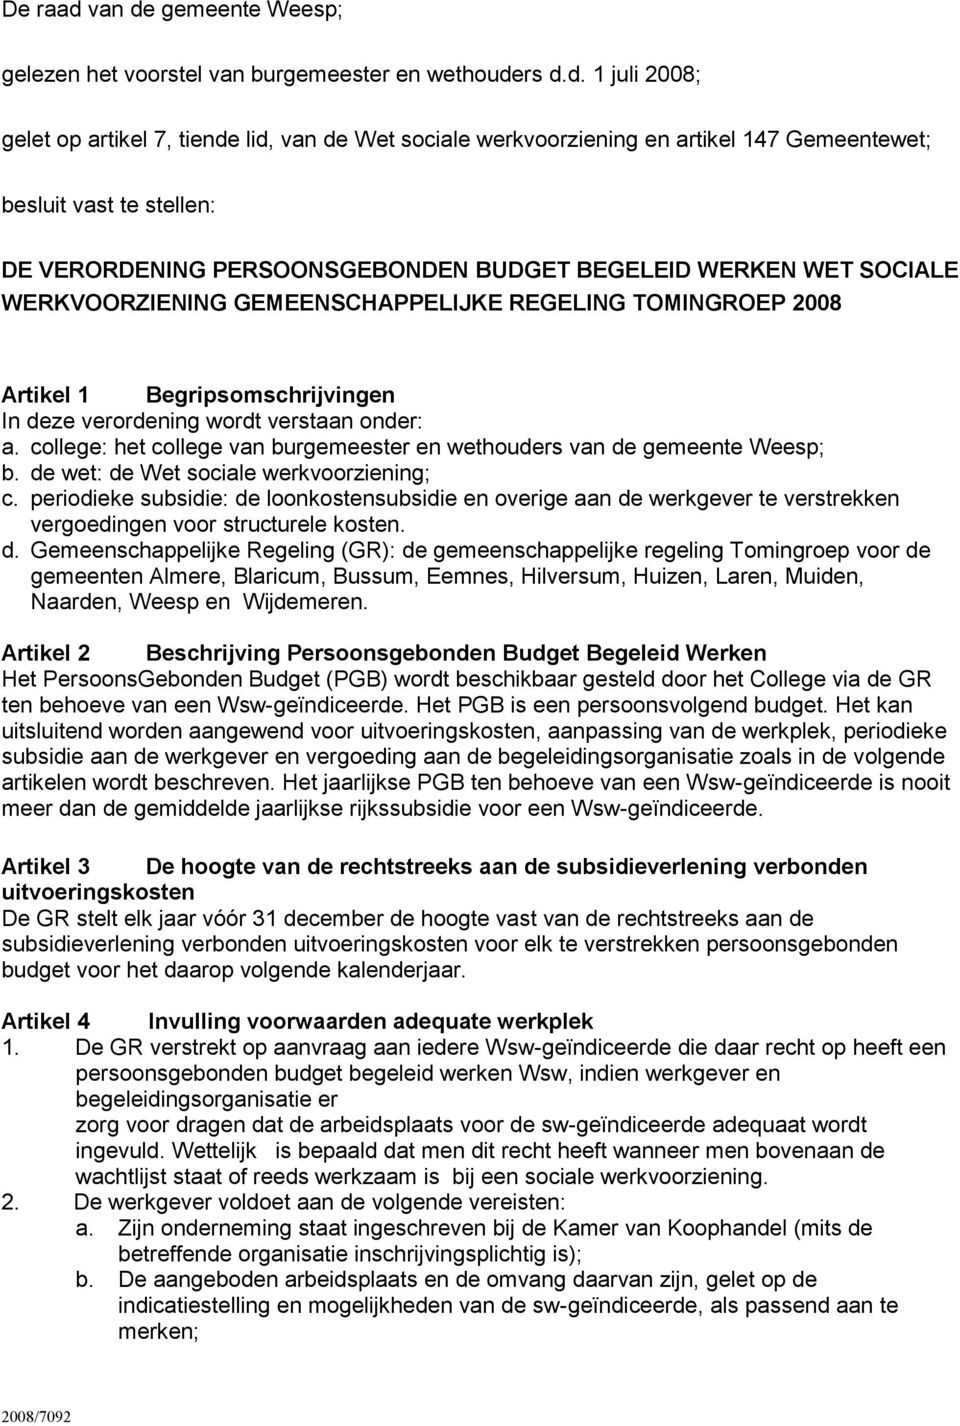 gemeente Weesp; gelezen het voorstel van burgemeester en wethoude